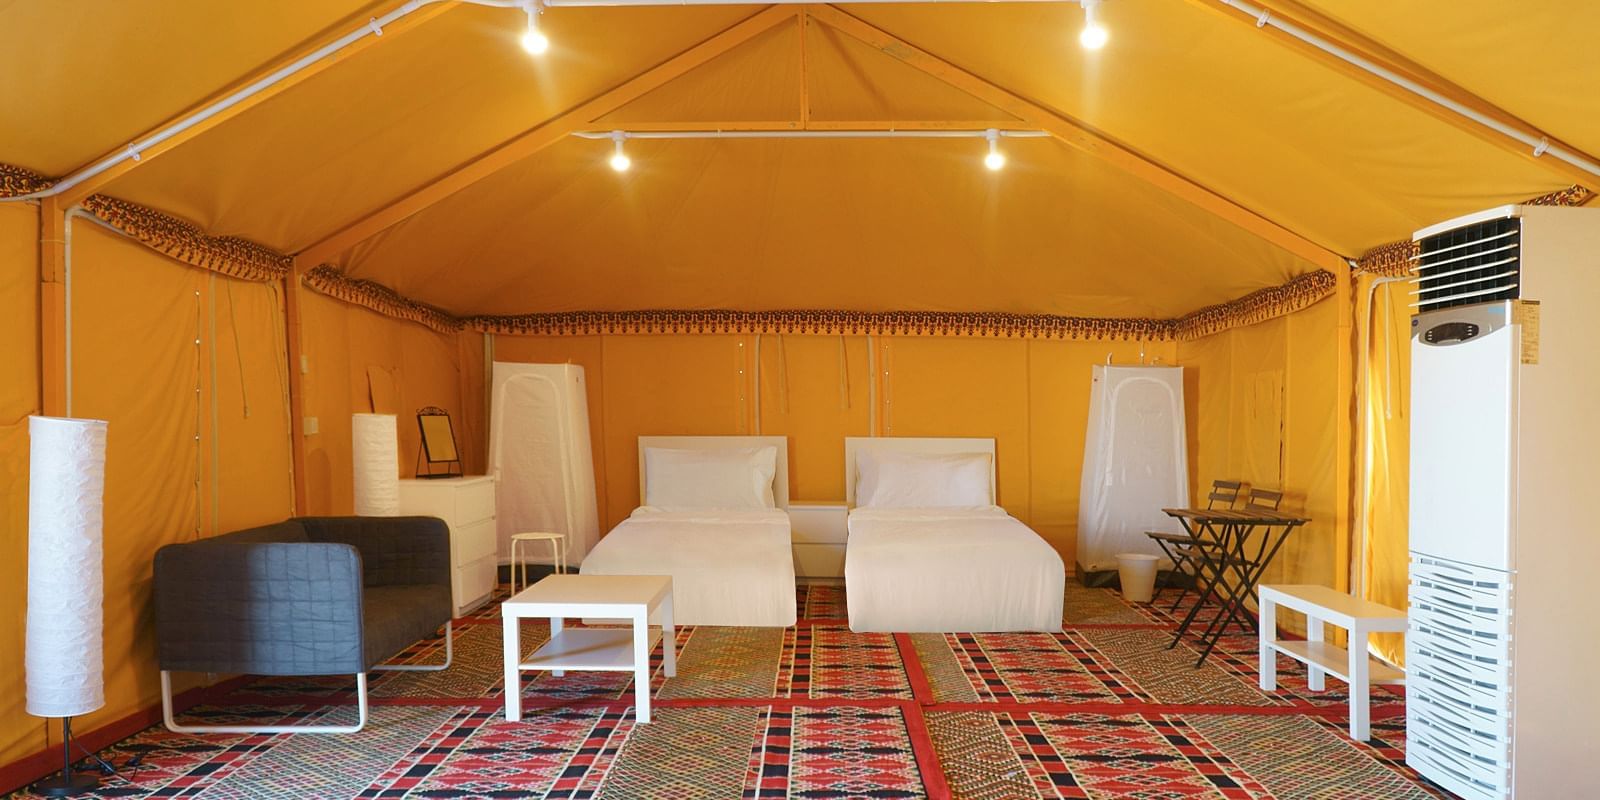 Bên trong chiếc lều đầy đủ tiện nghi dành cho du khách tới Qatar